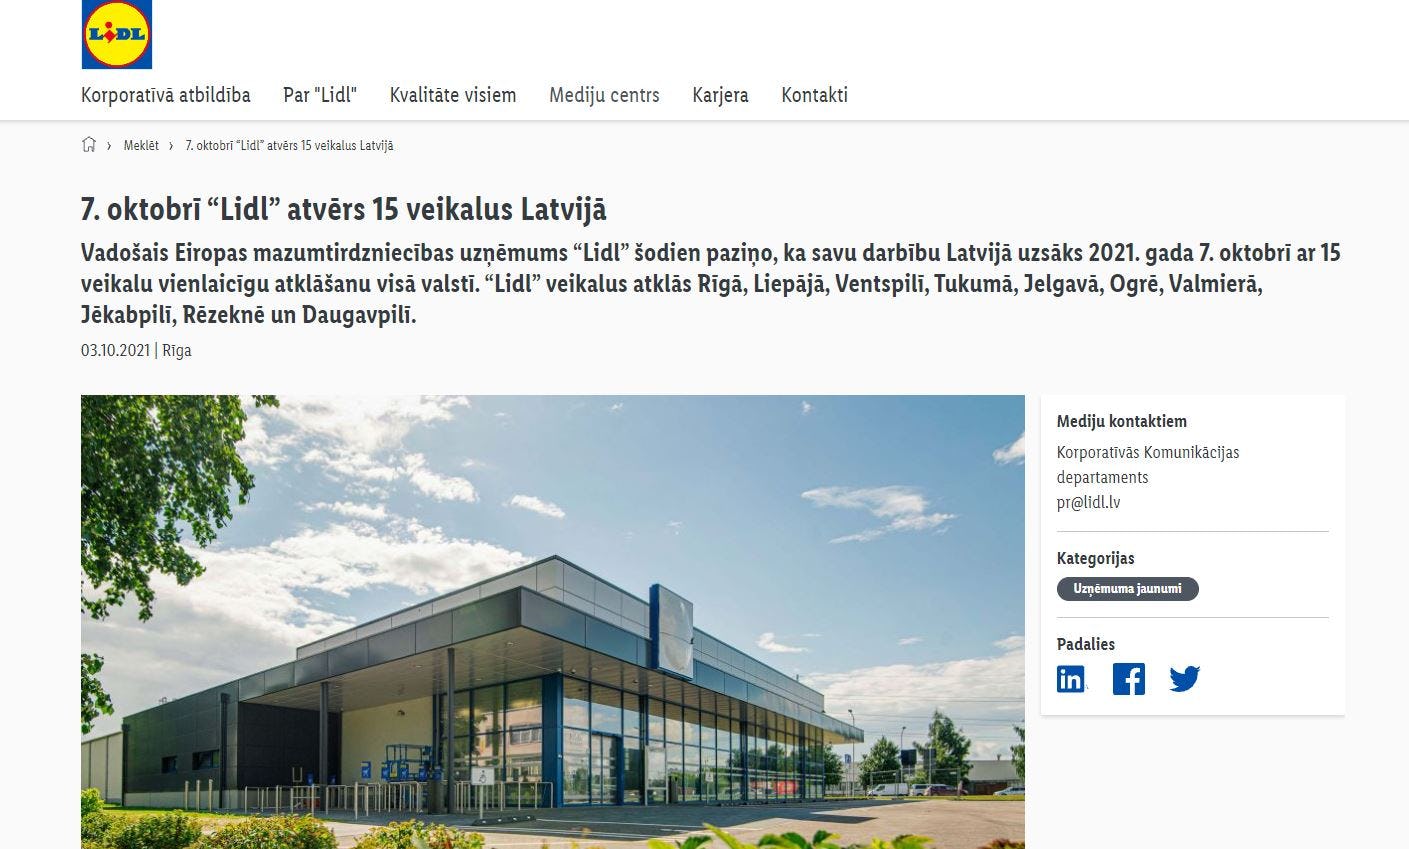 De aankondiging op de website van Lidl in Letland.